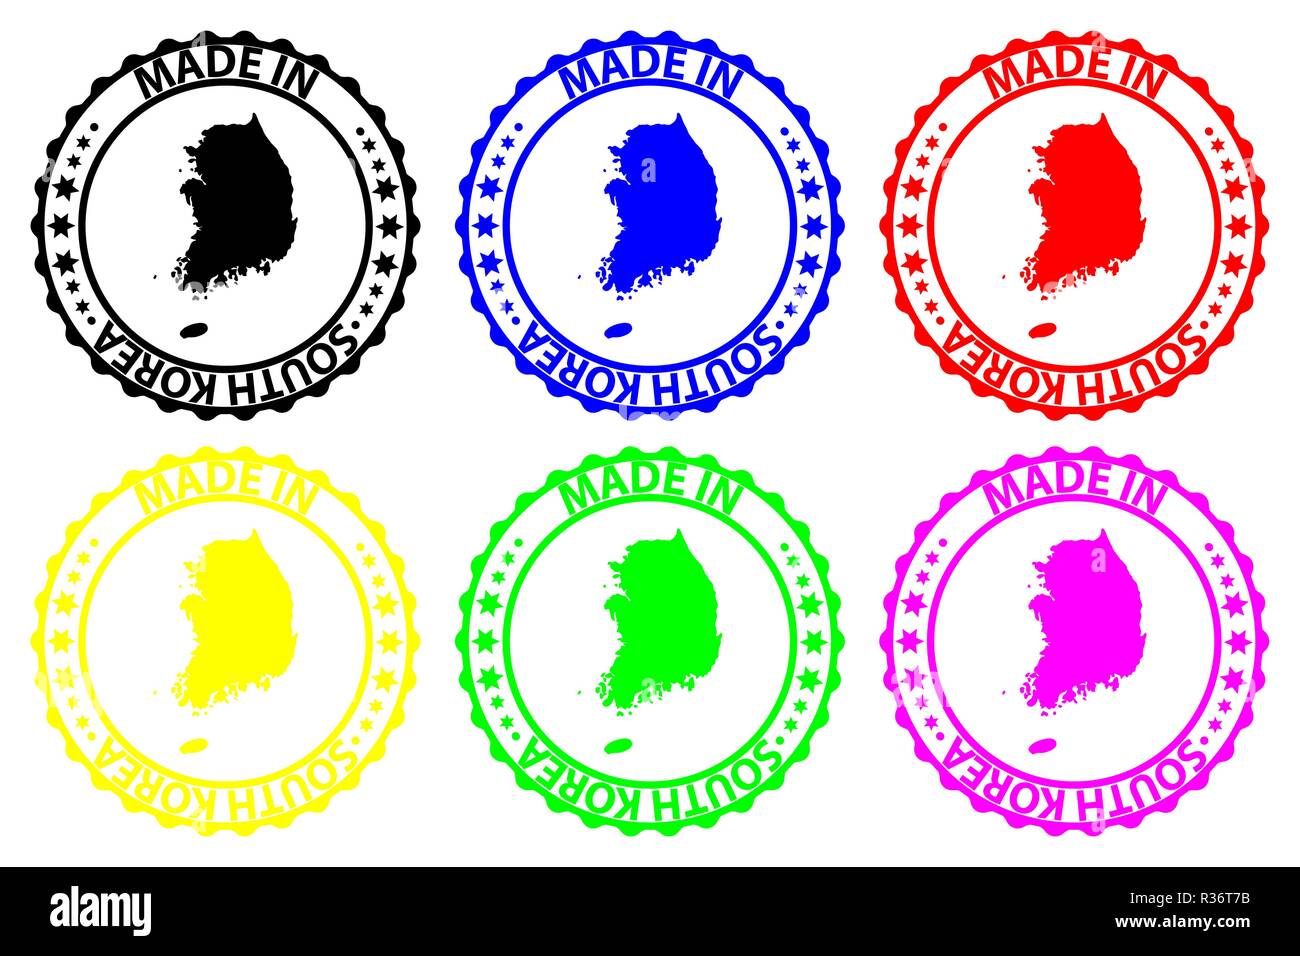 Faites en Corée du Sud - timbres en caoutchouc - vecteur, République de Corée site pattern - noir, bleu, vert, jaune, violet et rouge Illustration de Vecteur